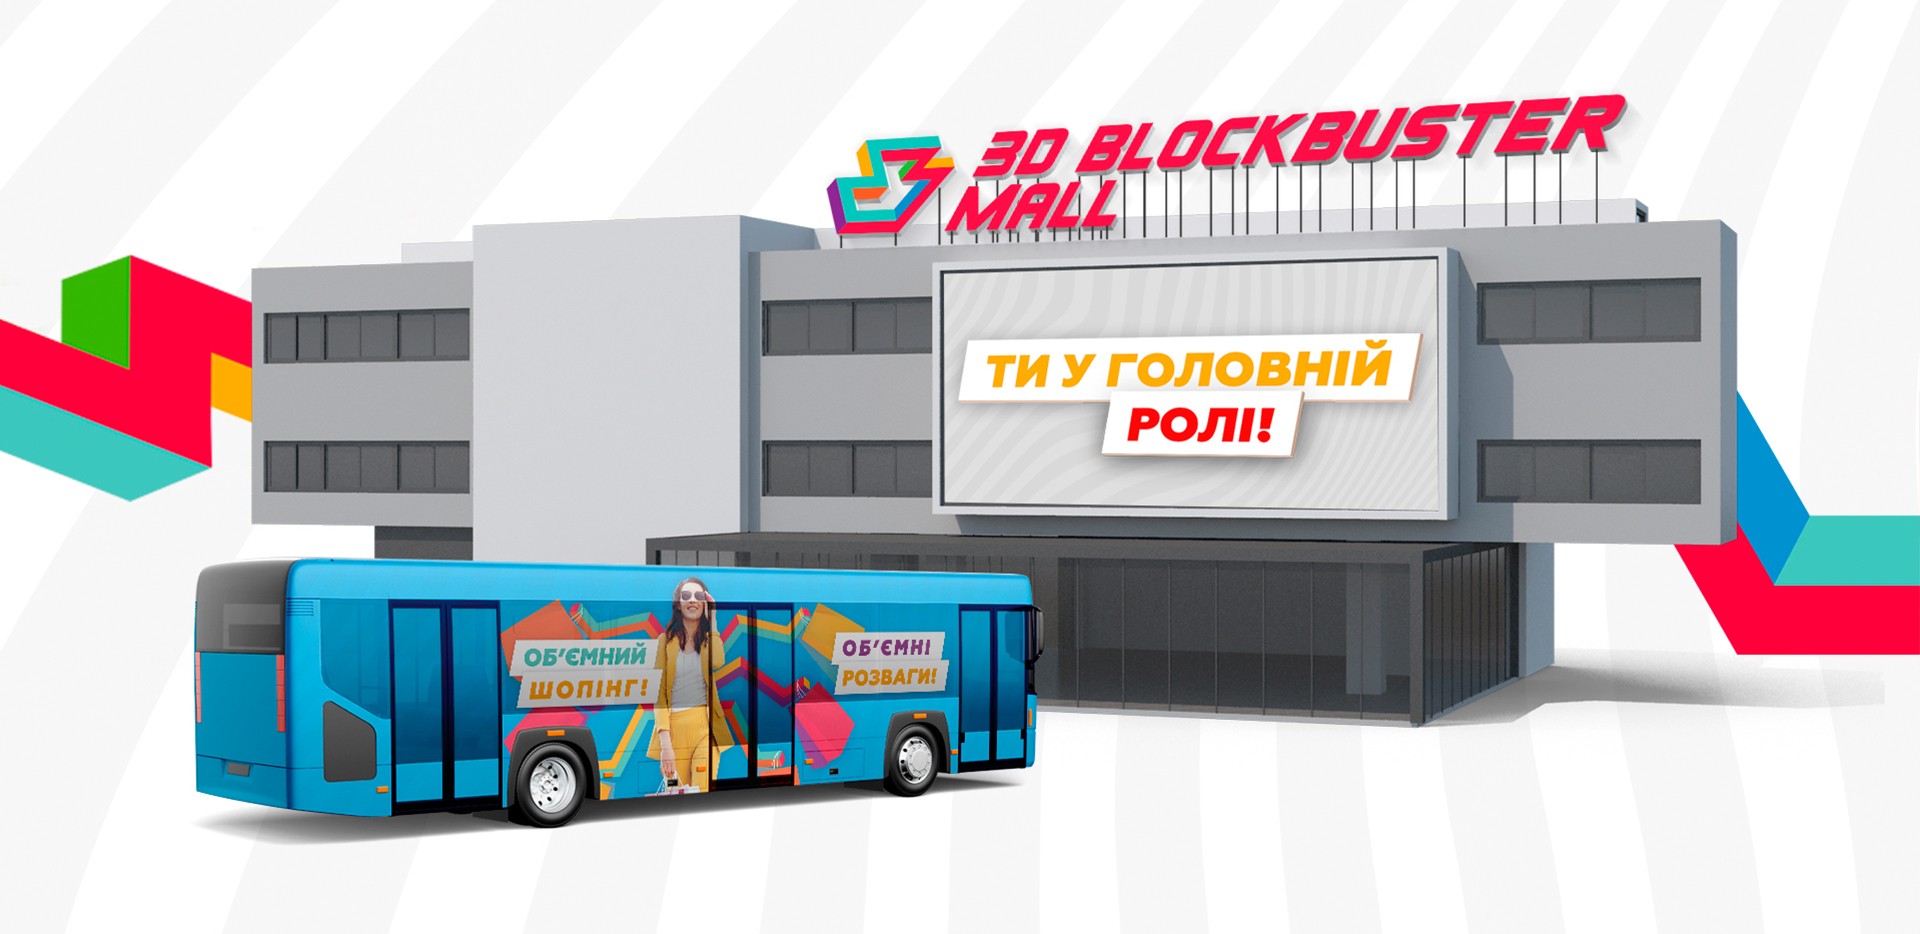 Фото №9: Blockbuster Mall - Разработка логотипа и создание бренда в студии брендинга Rocketmen Agency